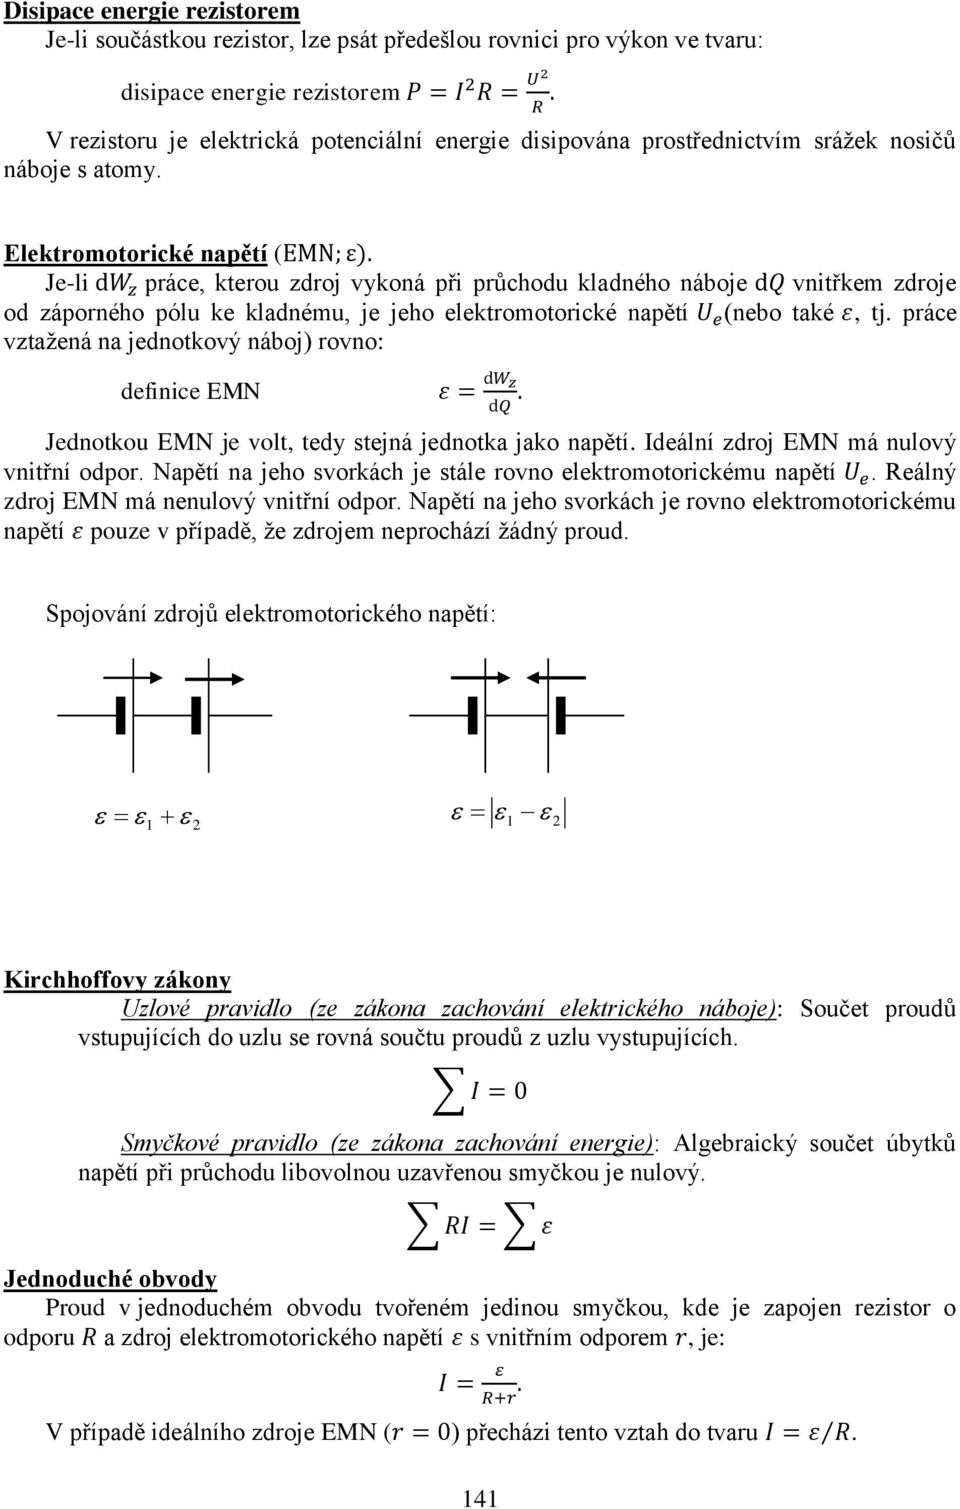 elektromotorické napětí (nebo také, tj práce vztažená na jednotkový náboj) rovno: definice EMN Jednotkou EMN je volt, tedy stejná jednotka jako napětí Ideální zdroj EMN má nulový vnitřní odpor Napětí